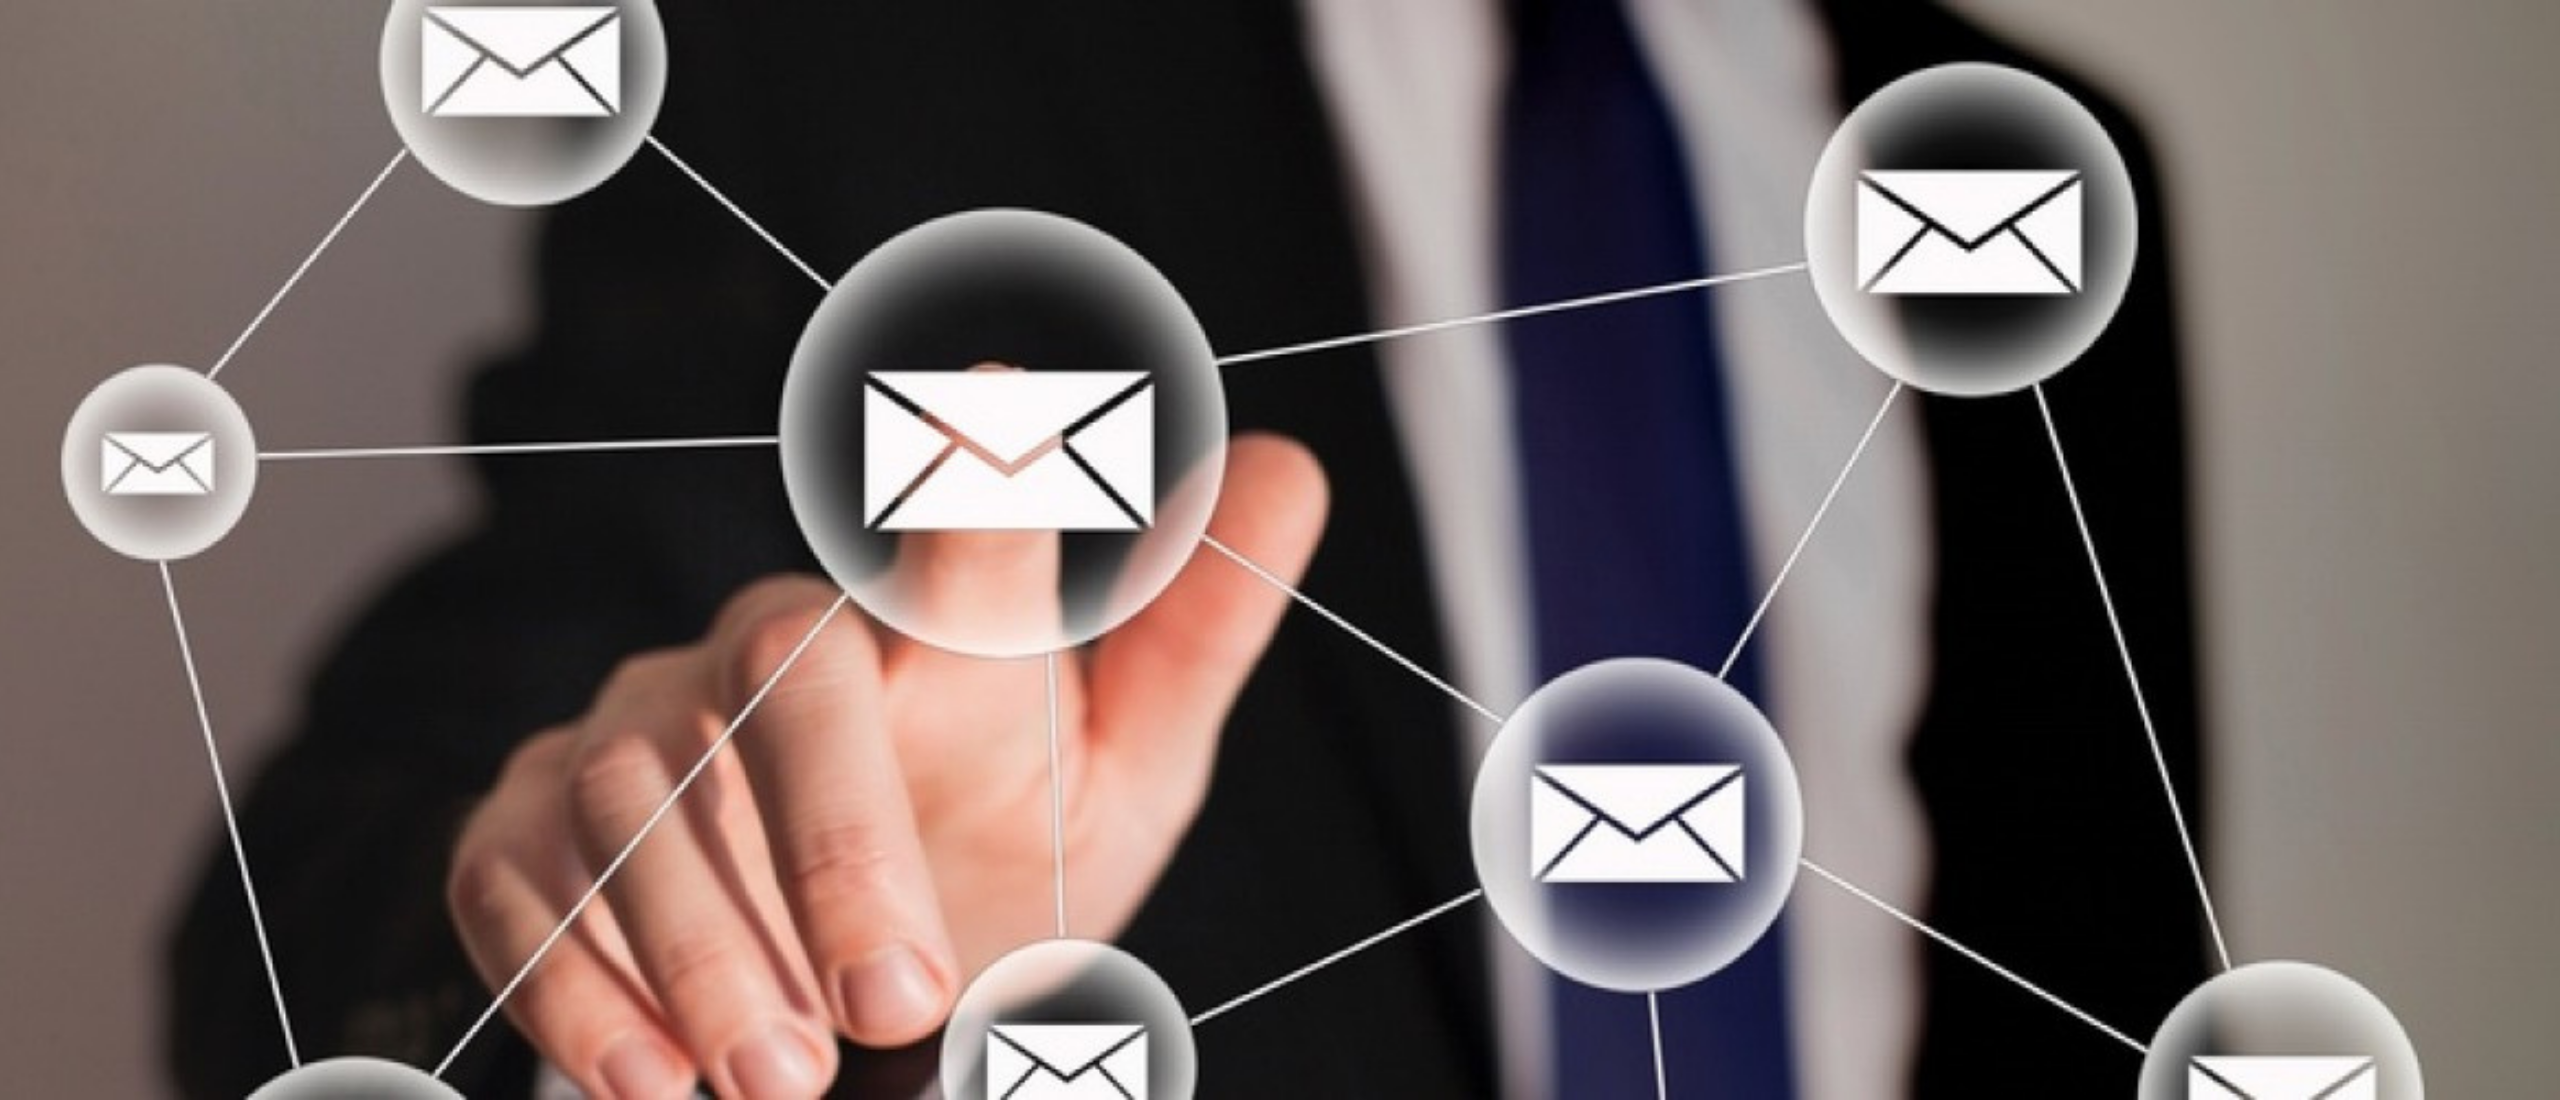 email marketing spam mailchimp nieuwsbrief